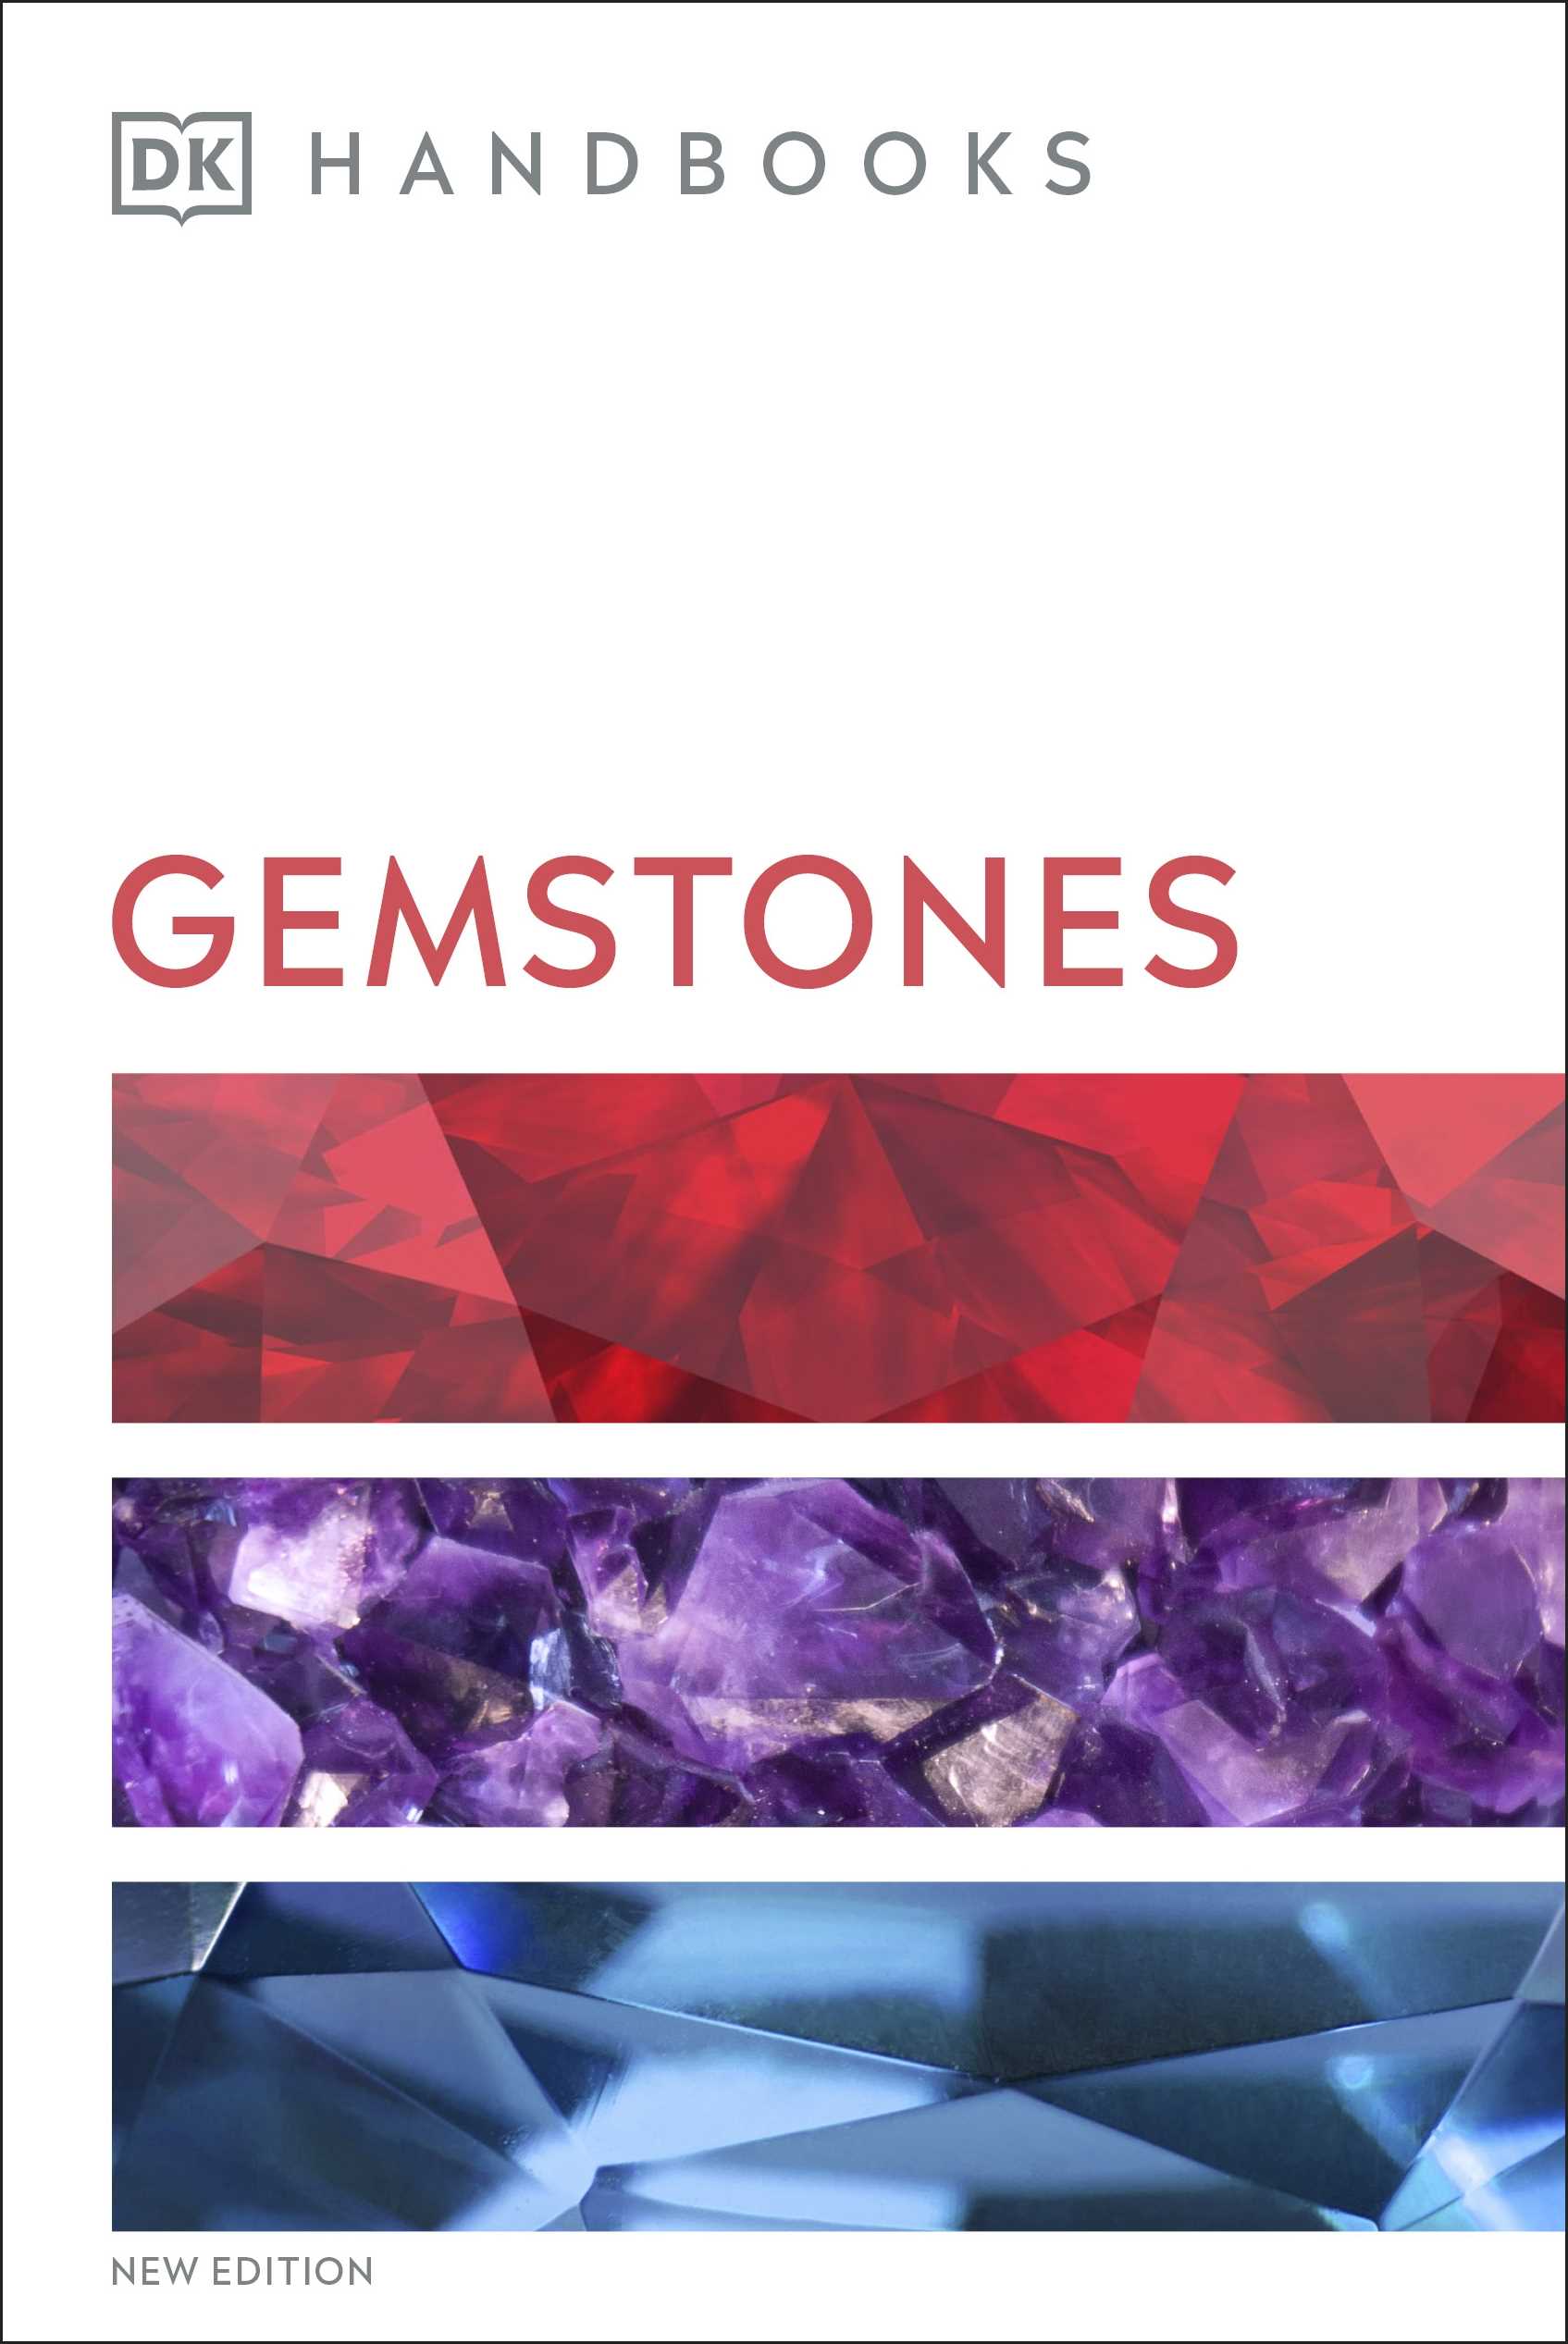 DK Handbooks: Gemstones